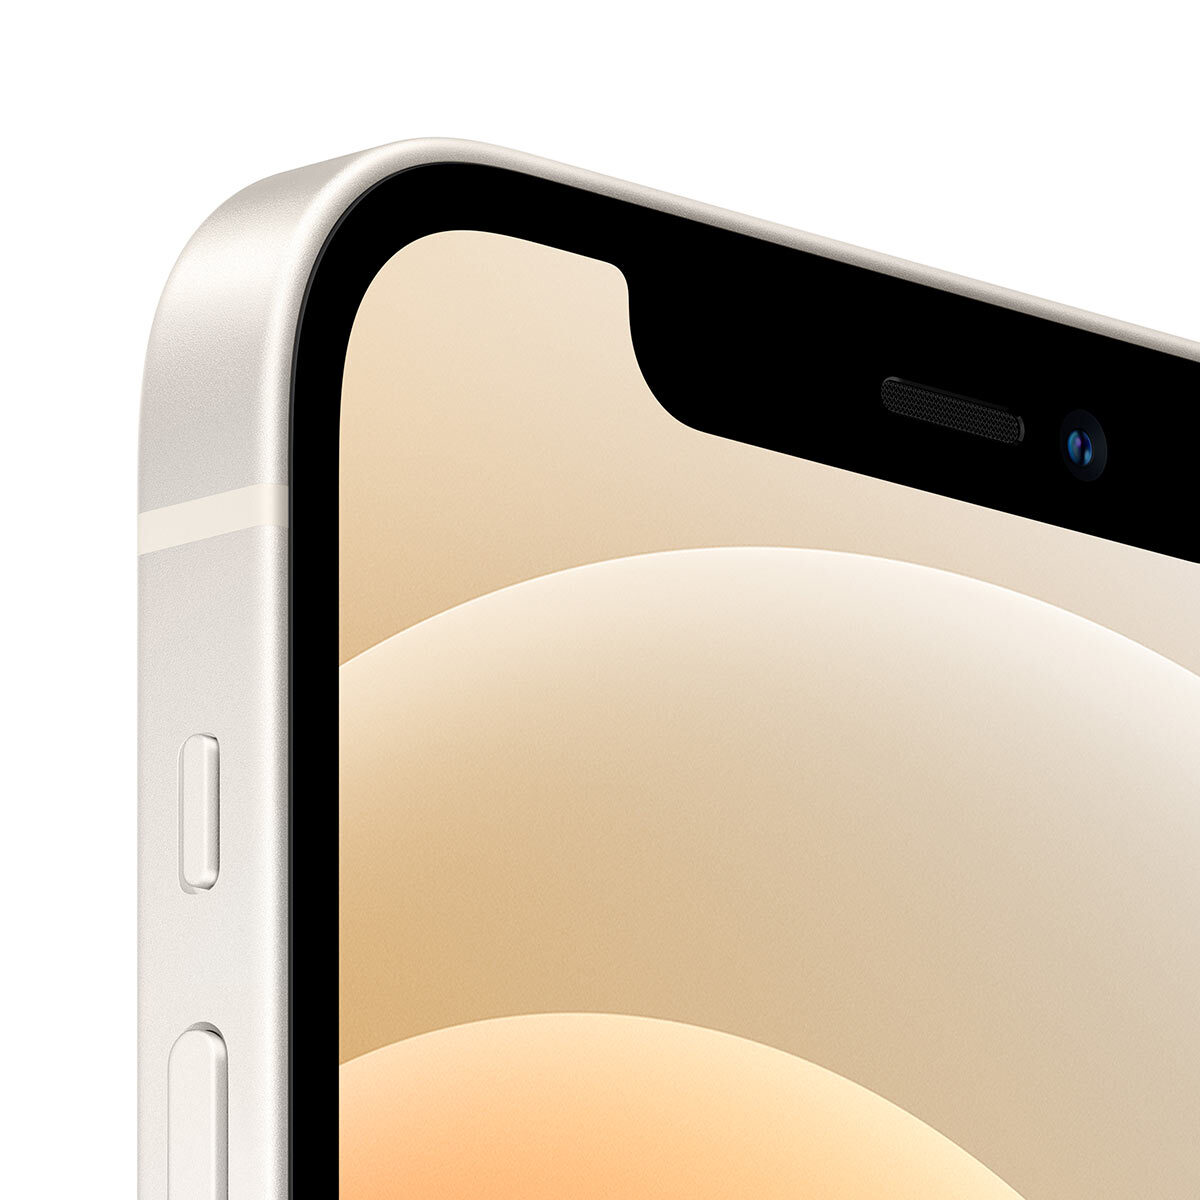 スマートフォン/携帯電話 スマートフォン本体 Apple iPhone 12 64GB Sim Free Mobile Phone in White, MGJ6